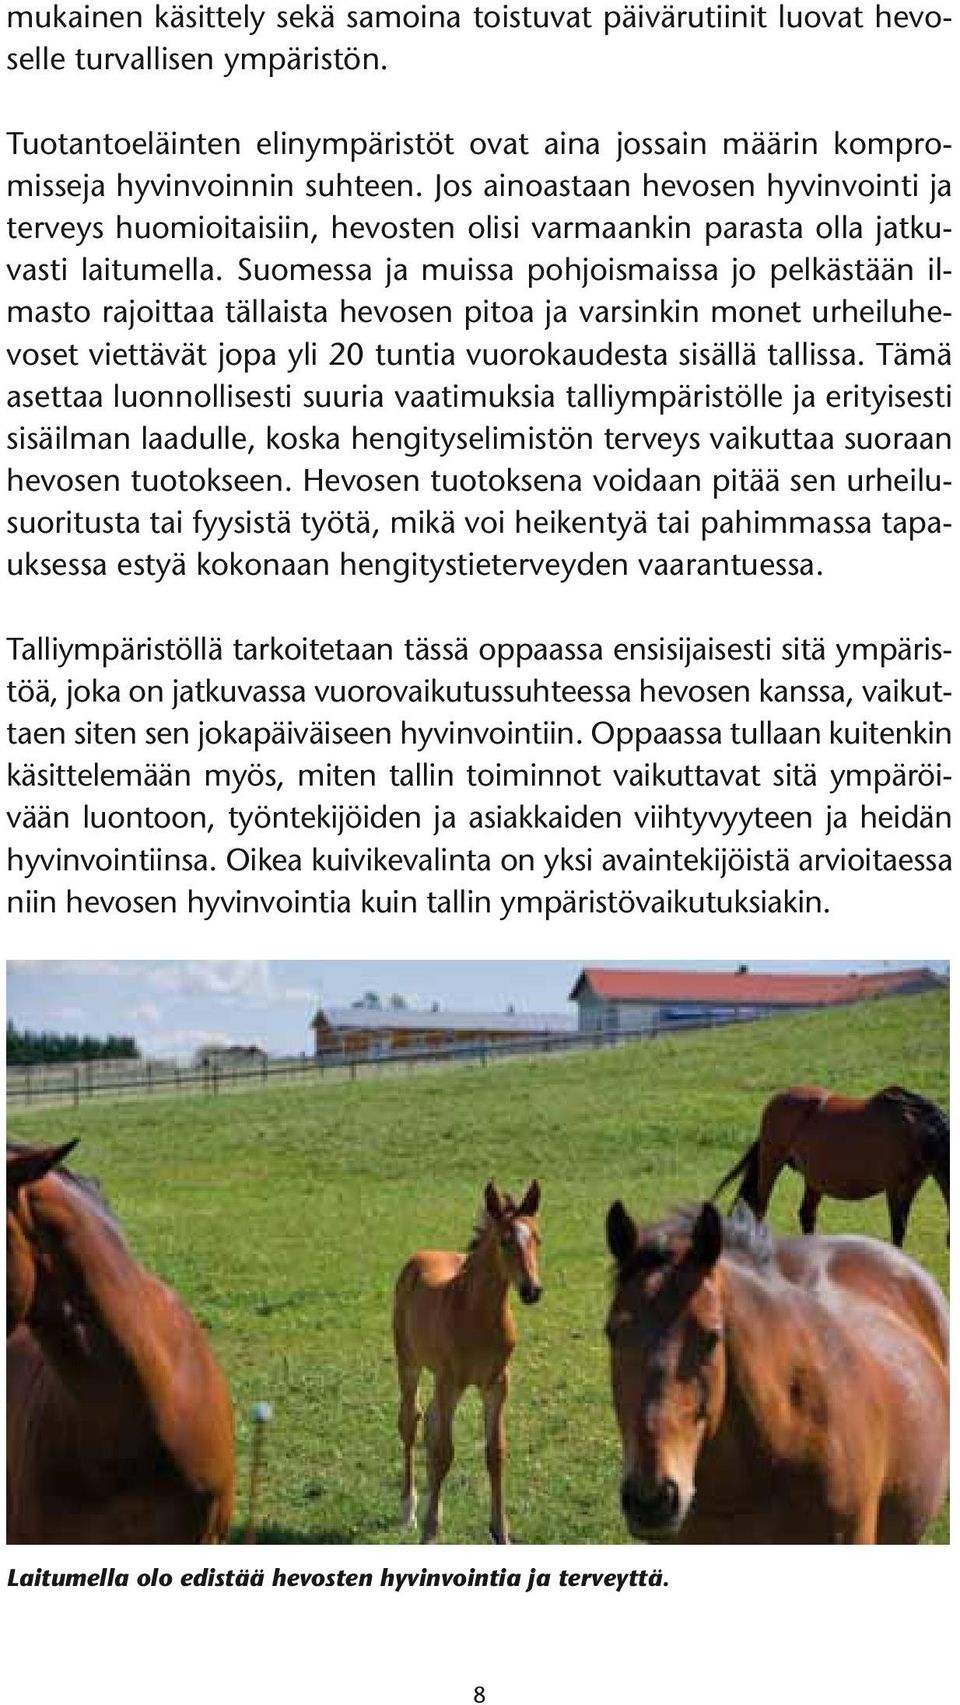 Suomessa ja muissa pohjoismaissa jo pelkästään ilmasto rajoittaa tällaista hevosen pitoa ja varsinkin monet urheiluhevoset viettävät jopa yli 20 tuntia vuorokaudesta sisällä tallissa.